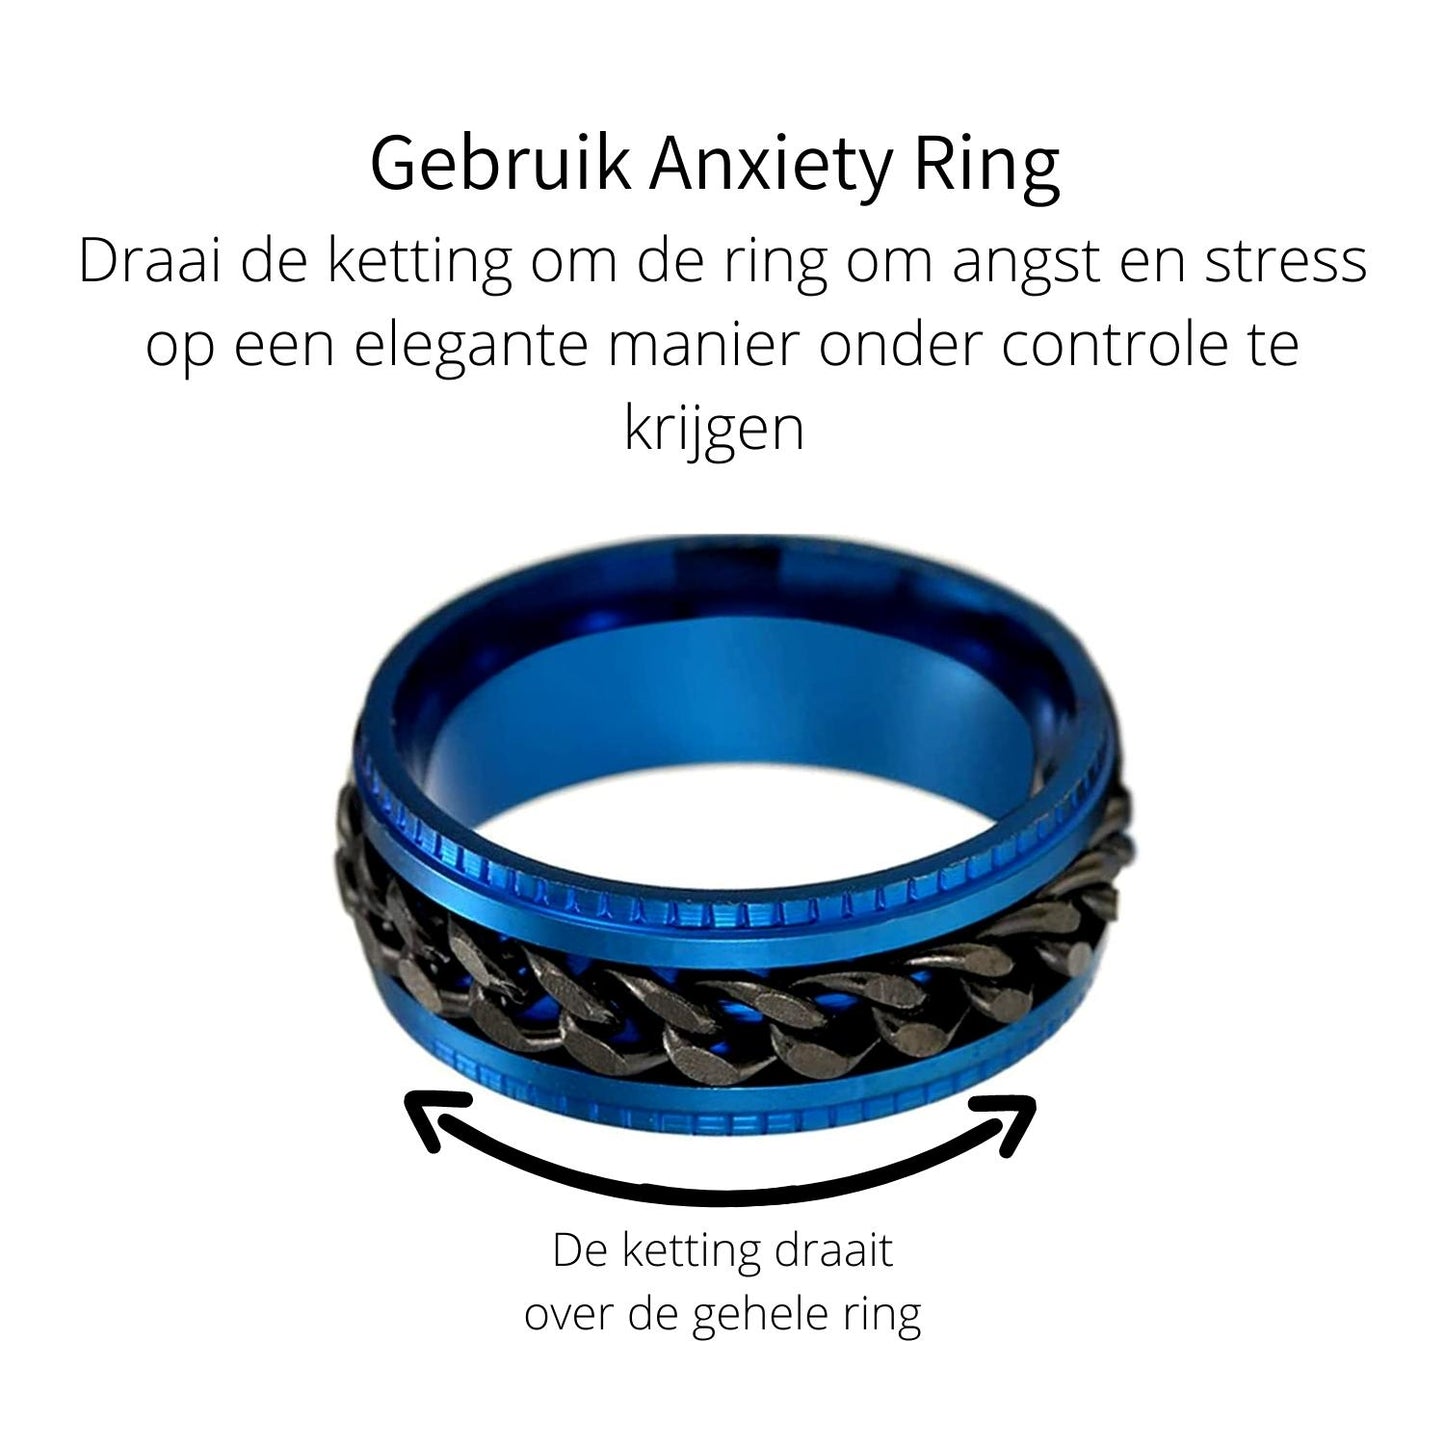 Anxiety Ring (ketting) Blauw-Zwart Gebruik